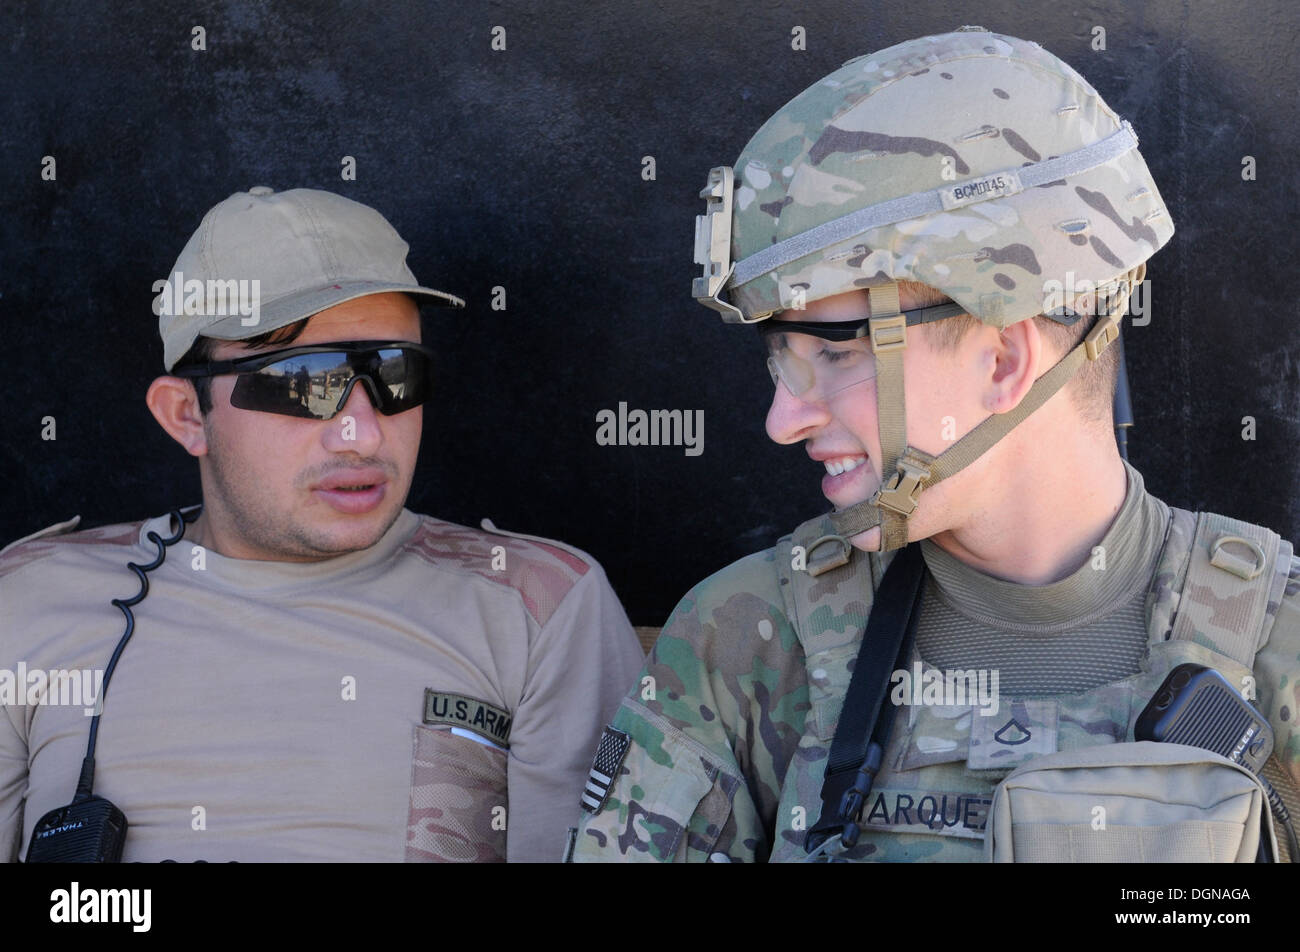 Circuit de l'armée américaine. Hector Marquez parle avec un garde de sécurité afghan au cours de son quart de travail à la base d'opérations avancée Tagab, Octobre 17, 20 Banque D'Images